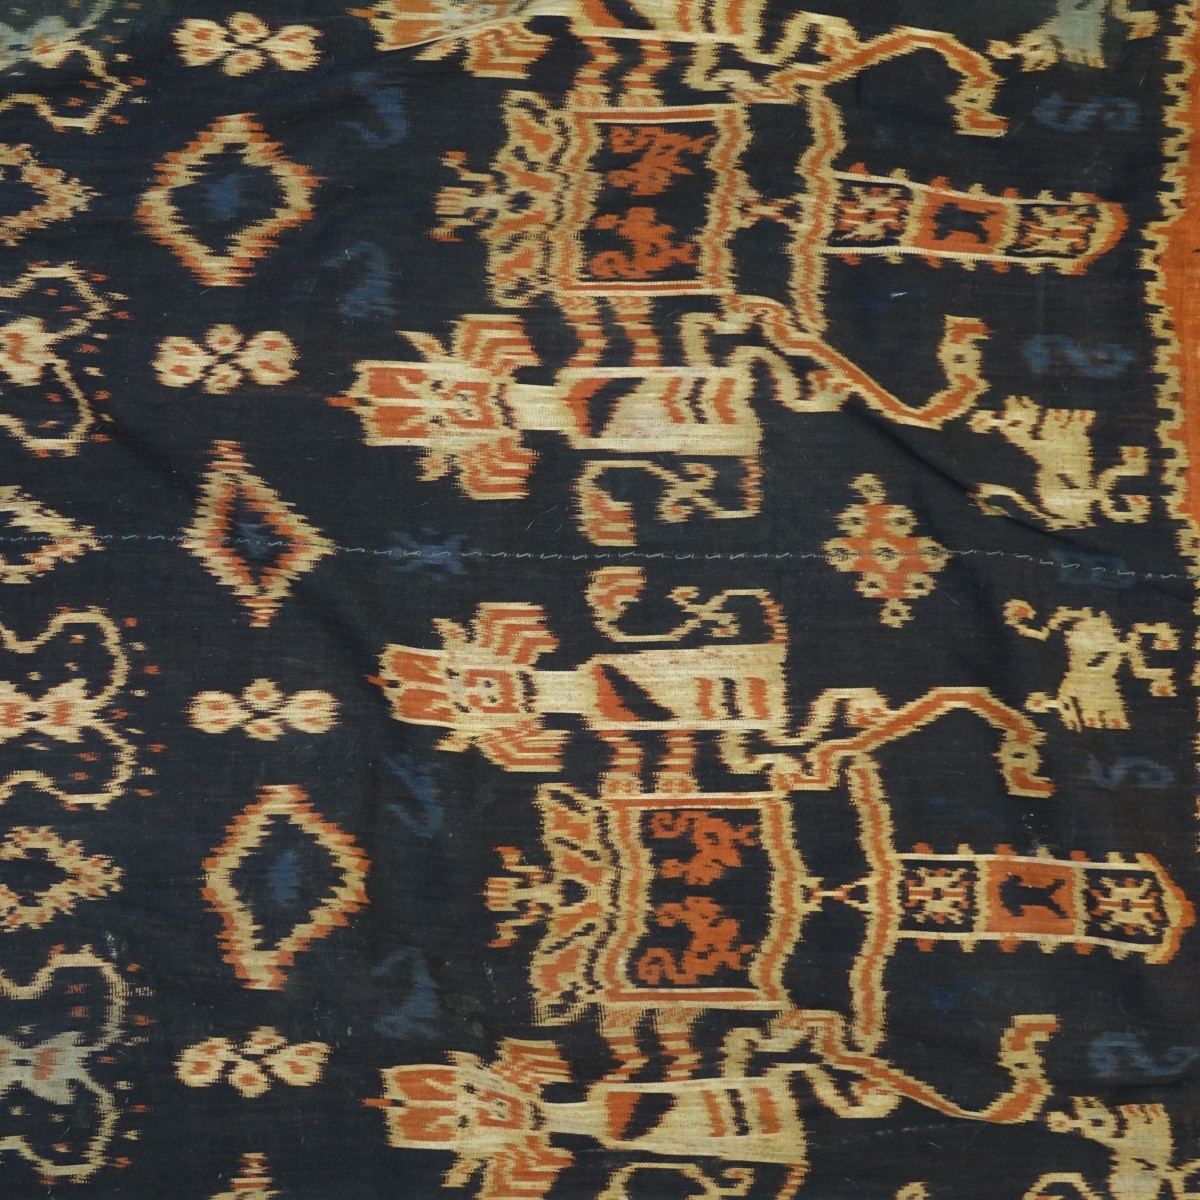 Antique Indonesian Batik Fabric